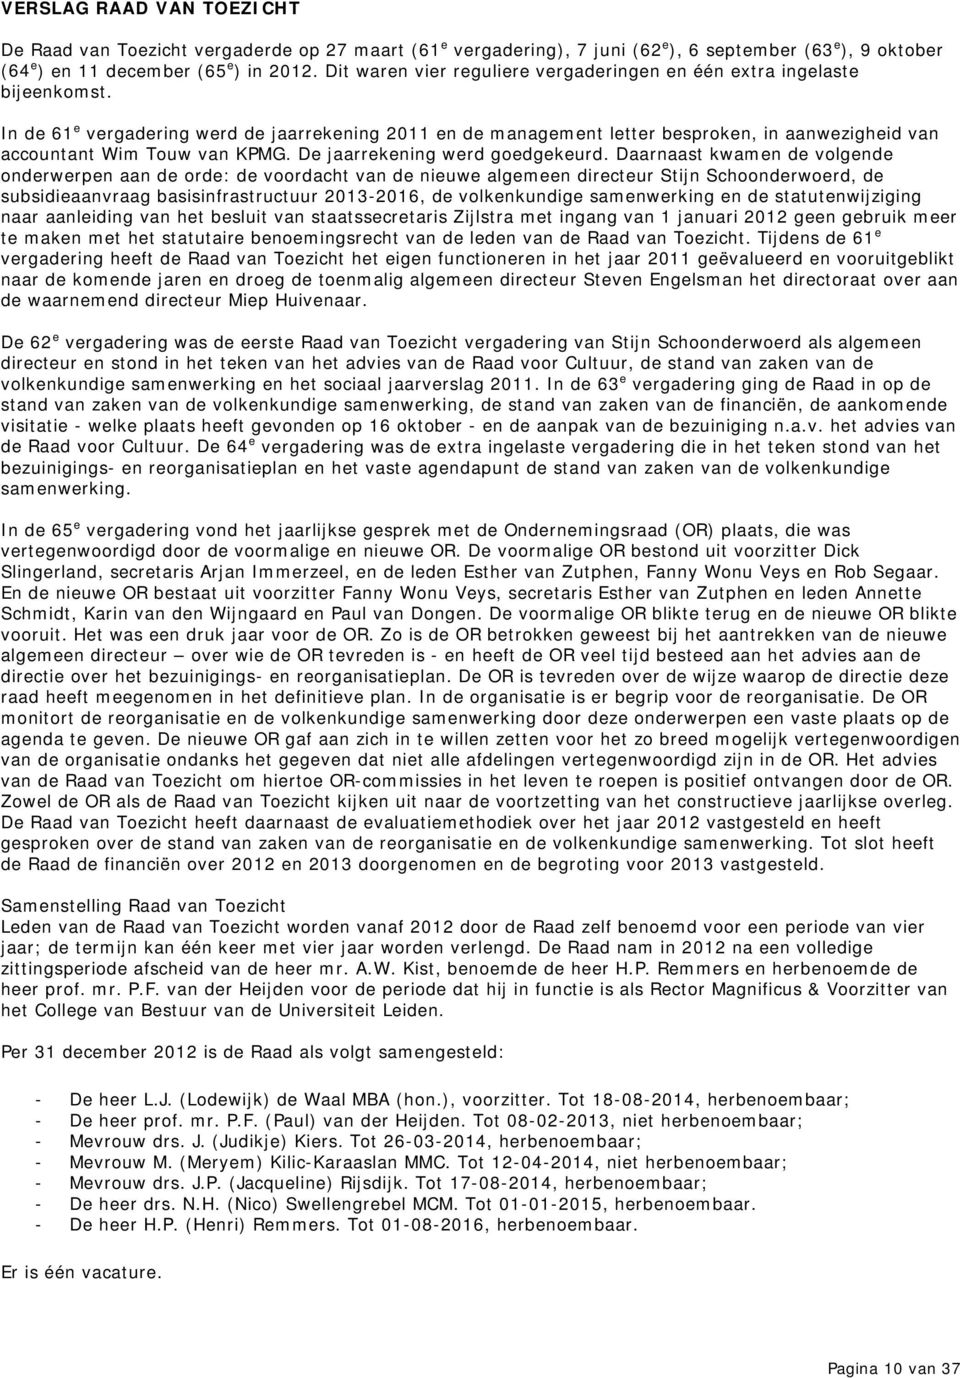 In de 61 e vergadering werd de jaarrekening 2011 en de management letter besproken, in aanwezigheid van accountant Wim Touw van KPMG. De jaarrekening werd goedgekeurd.